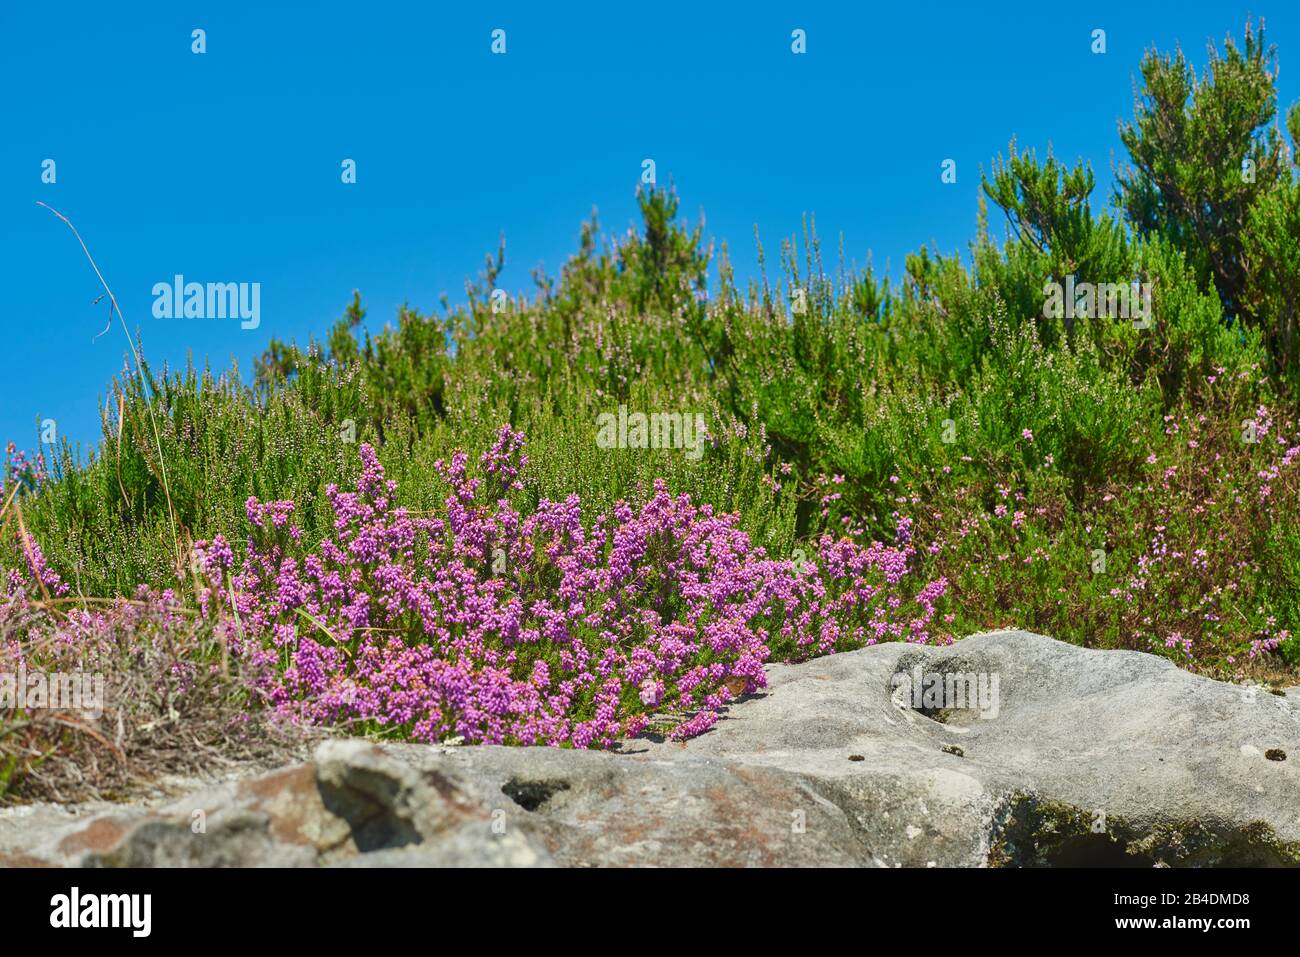 Ährenheide, Siebenbürger Heide, Erica spiculifolia, blühen am Jakobsweg auf dem berg Jaizkibel, Baskenland, Spanien Stock Photo